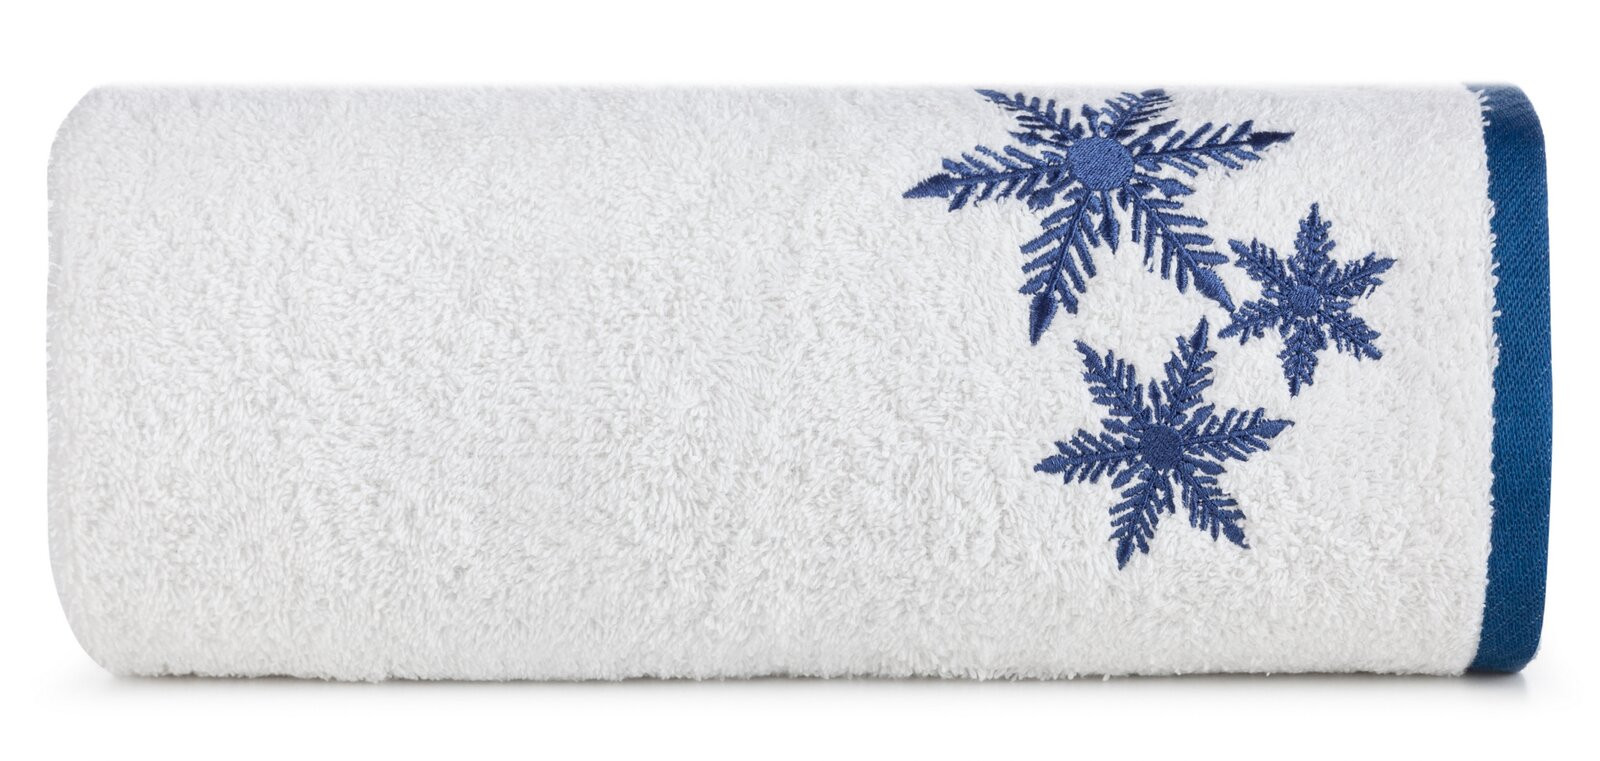 Sada ručníků CAROL 01 bílá / modrá